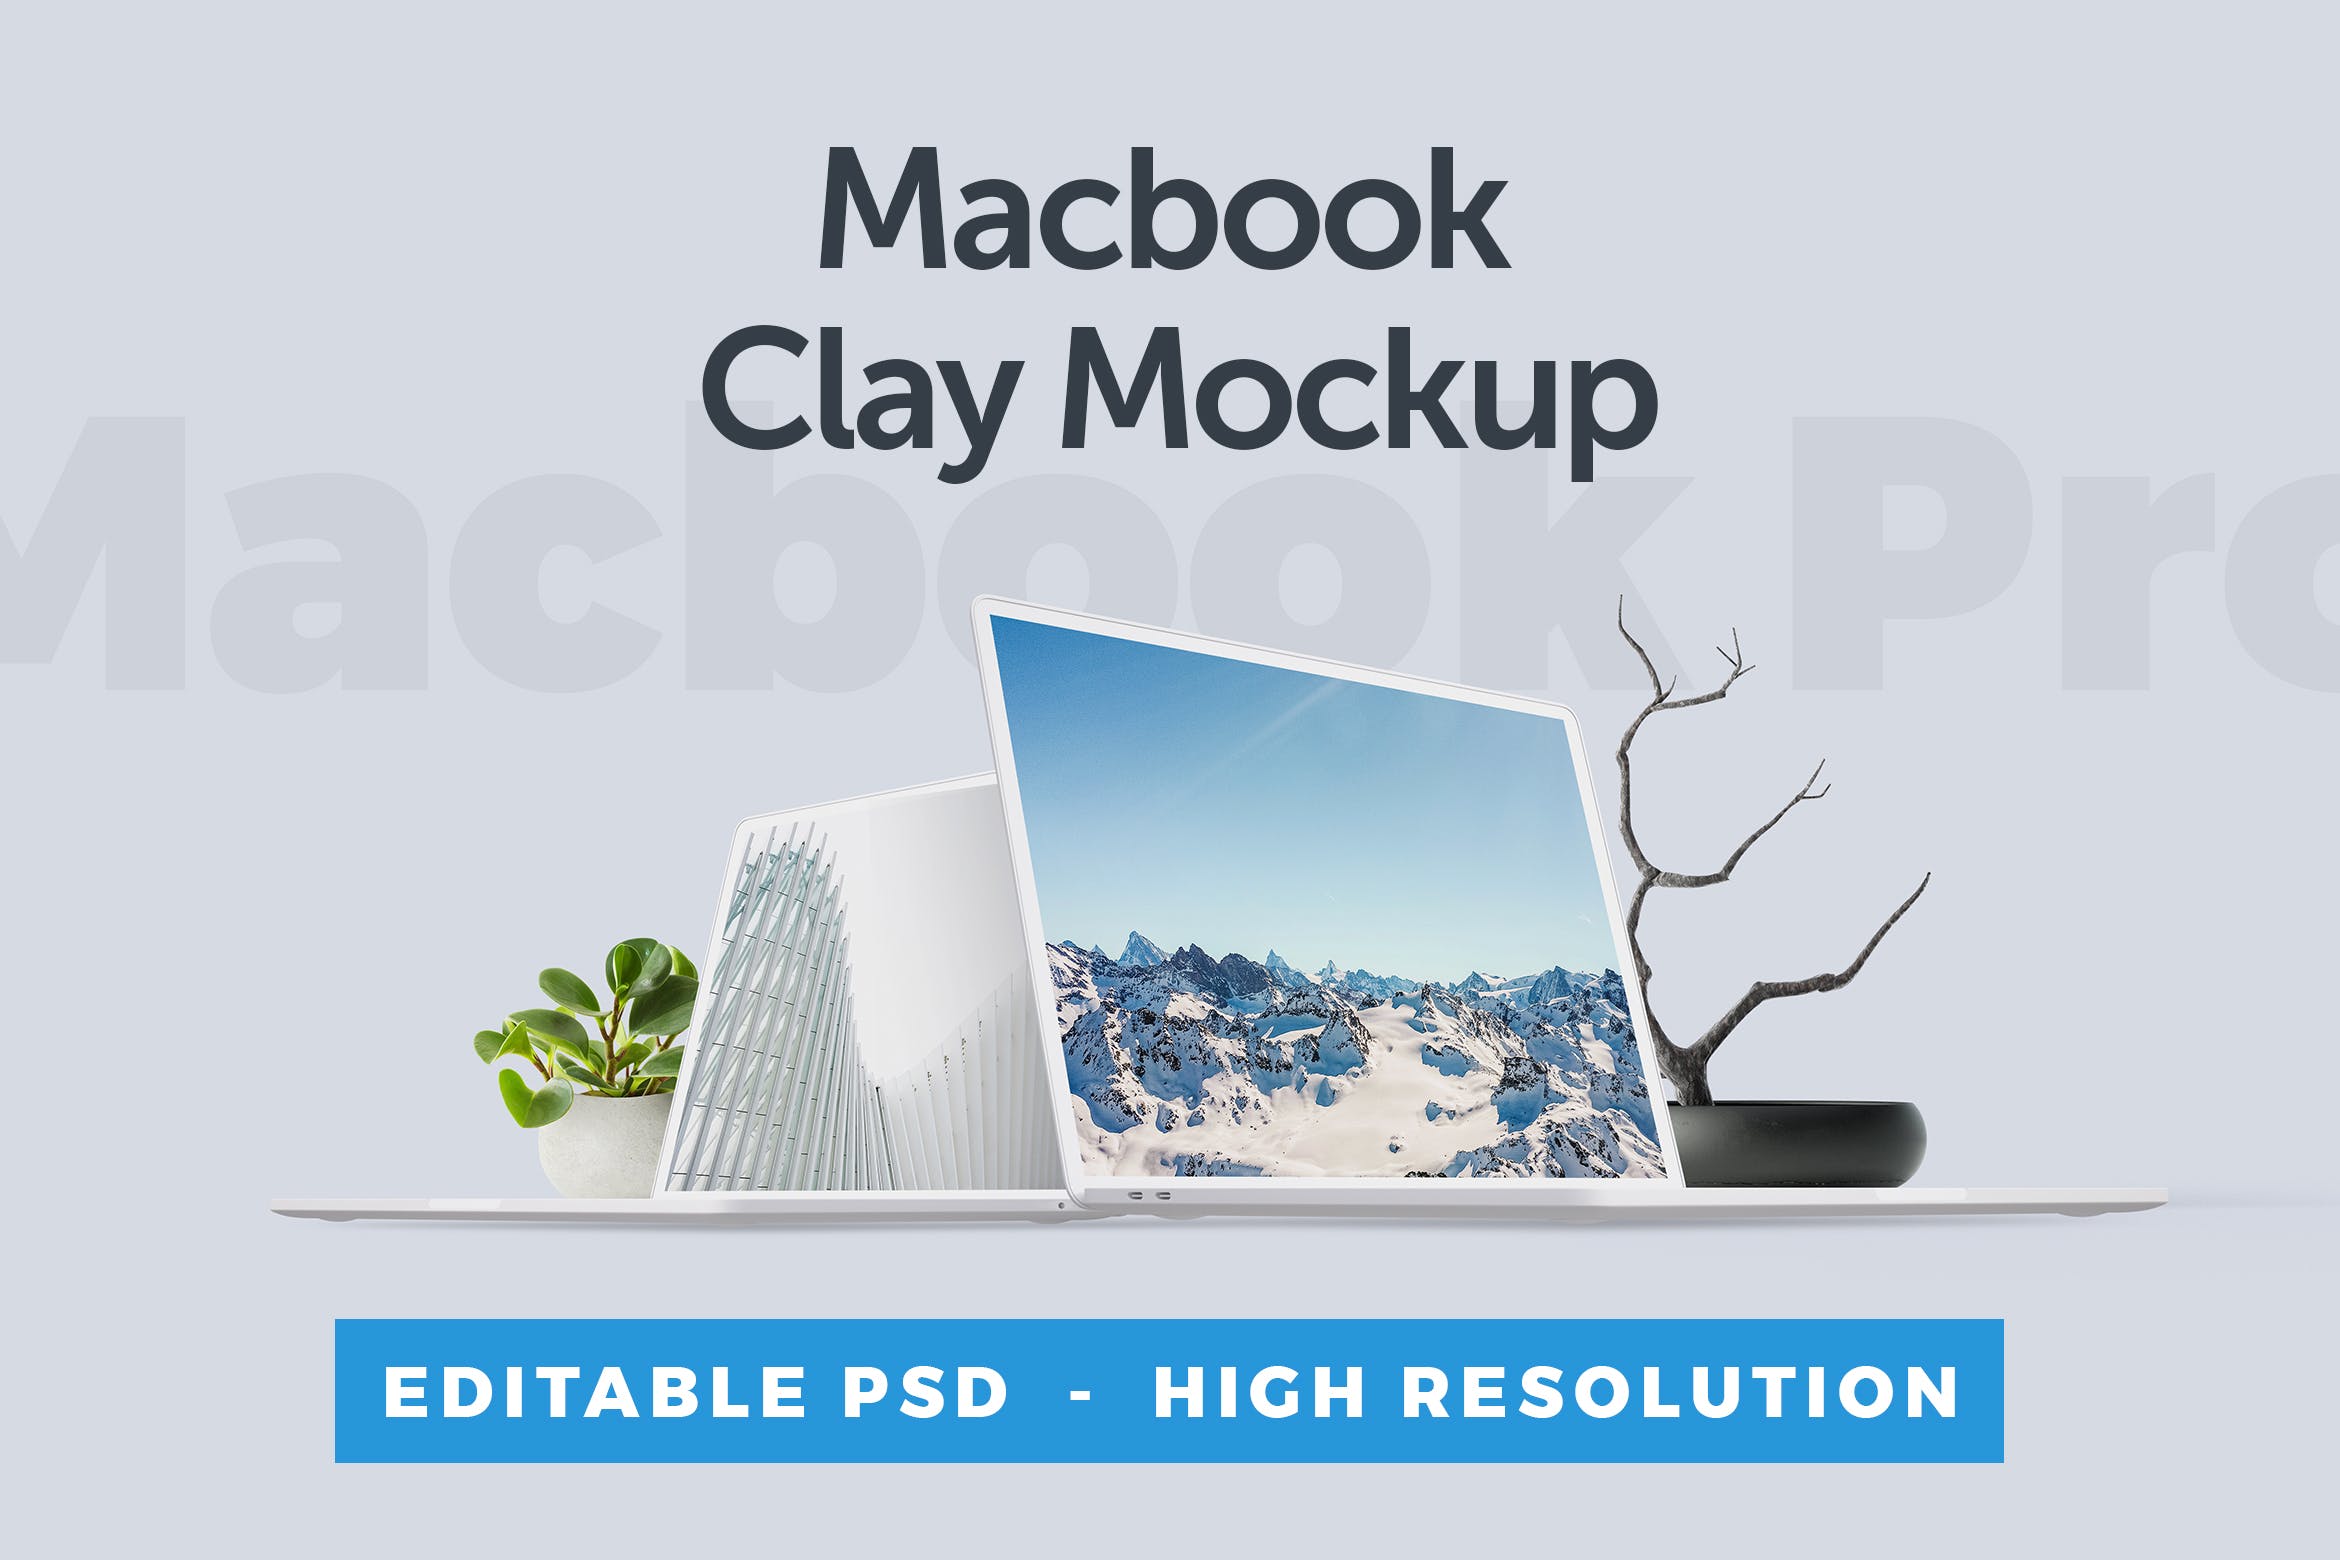 MacBook笔记本电脑屏幕演示普贤居精选样机 Macbook Clay Mockup插图